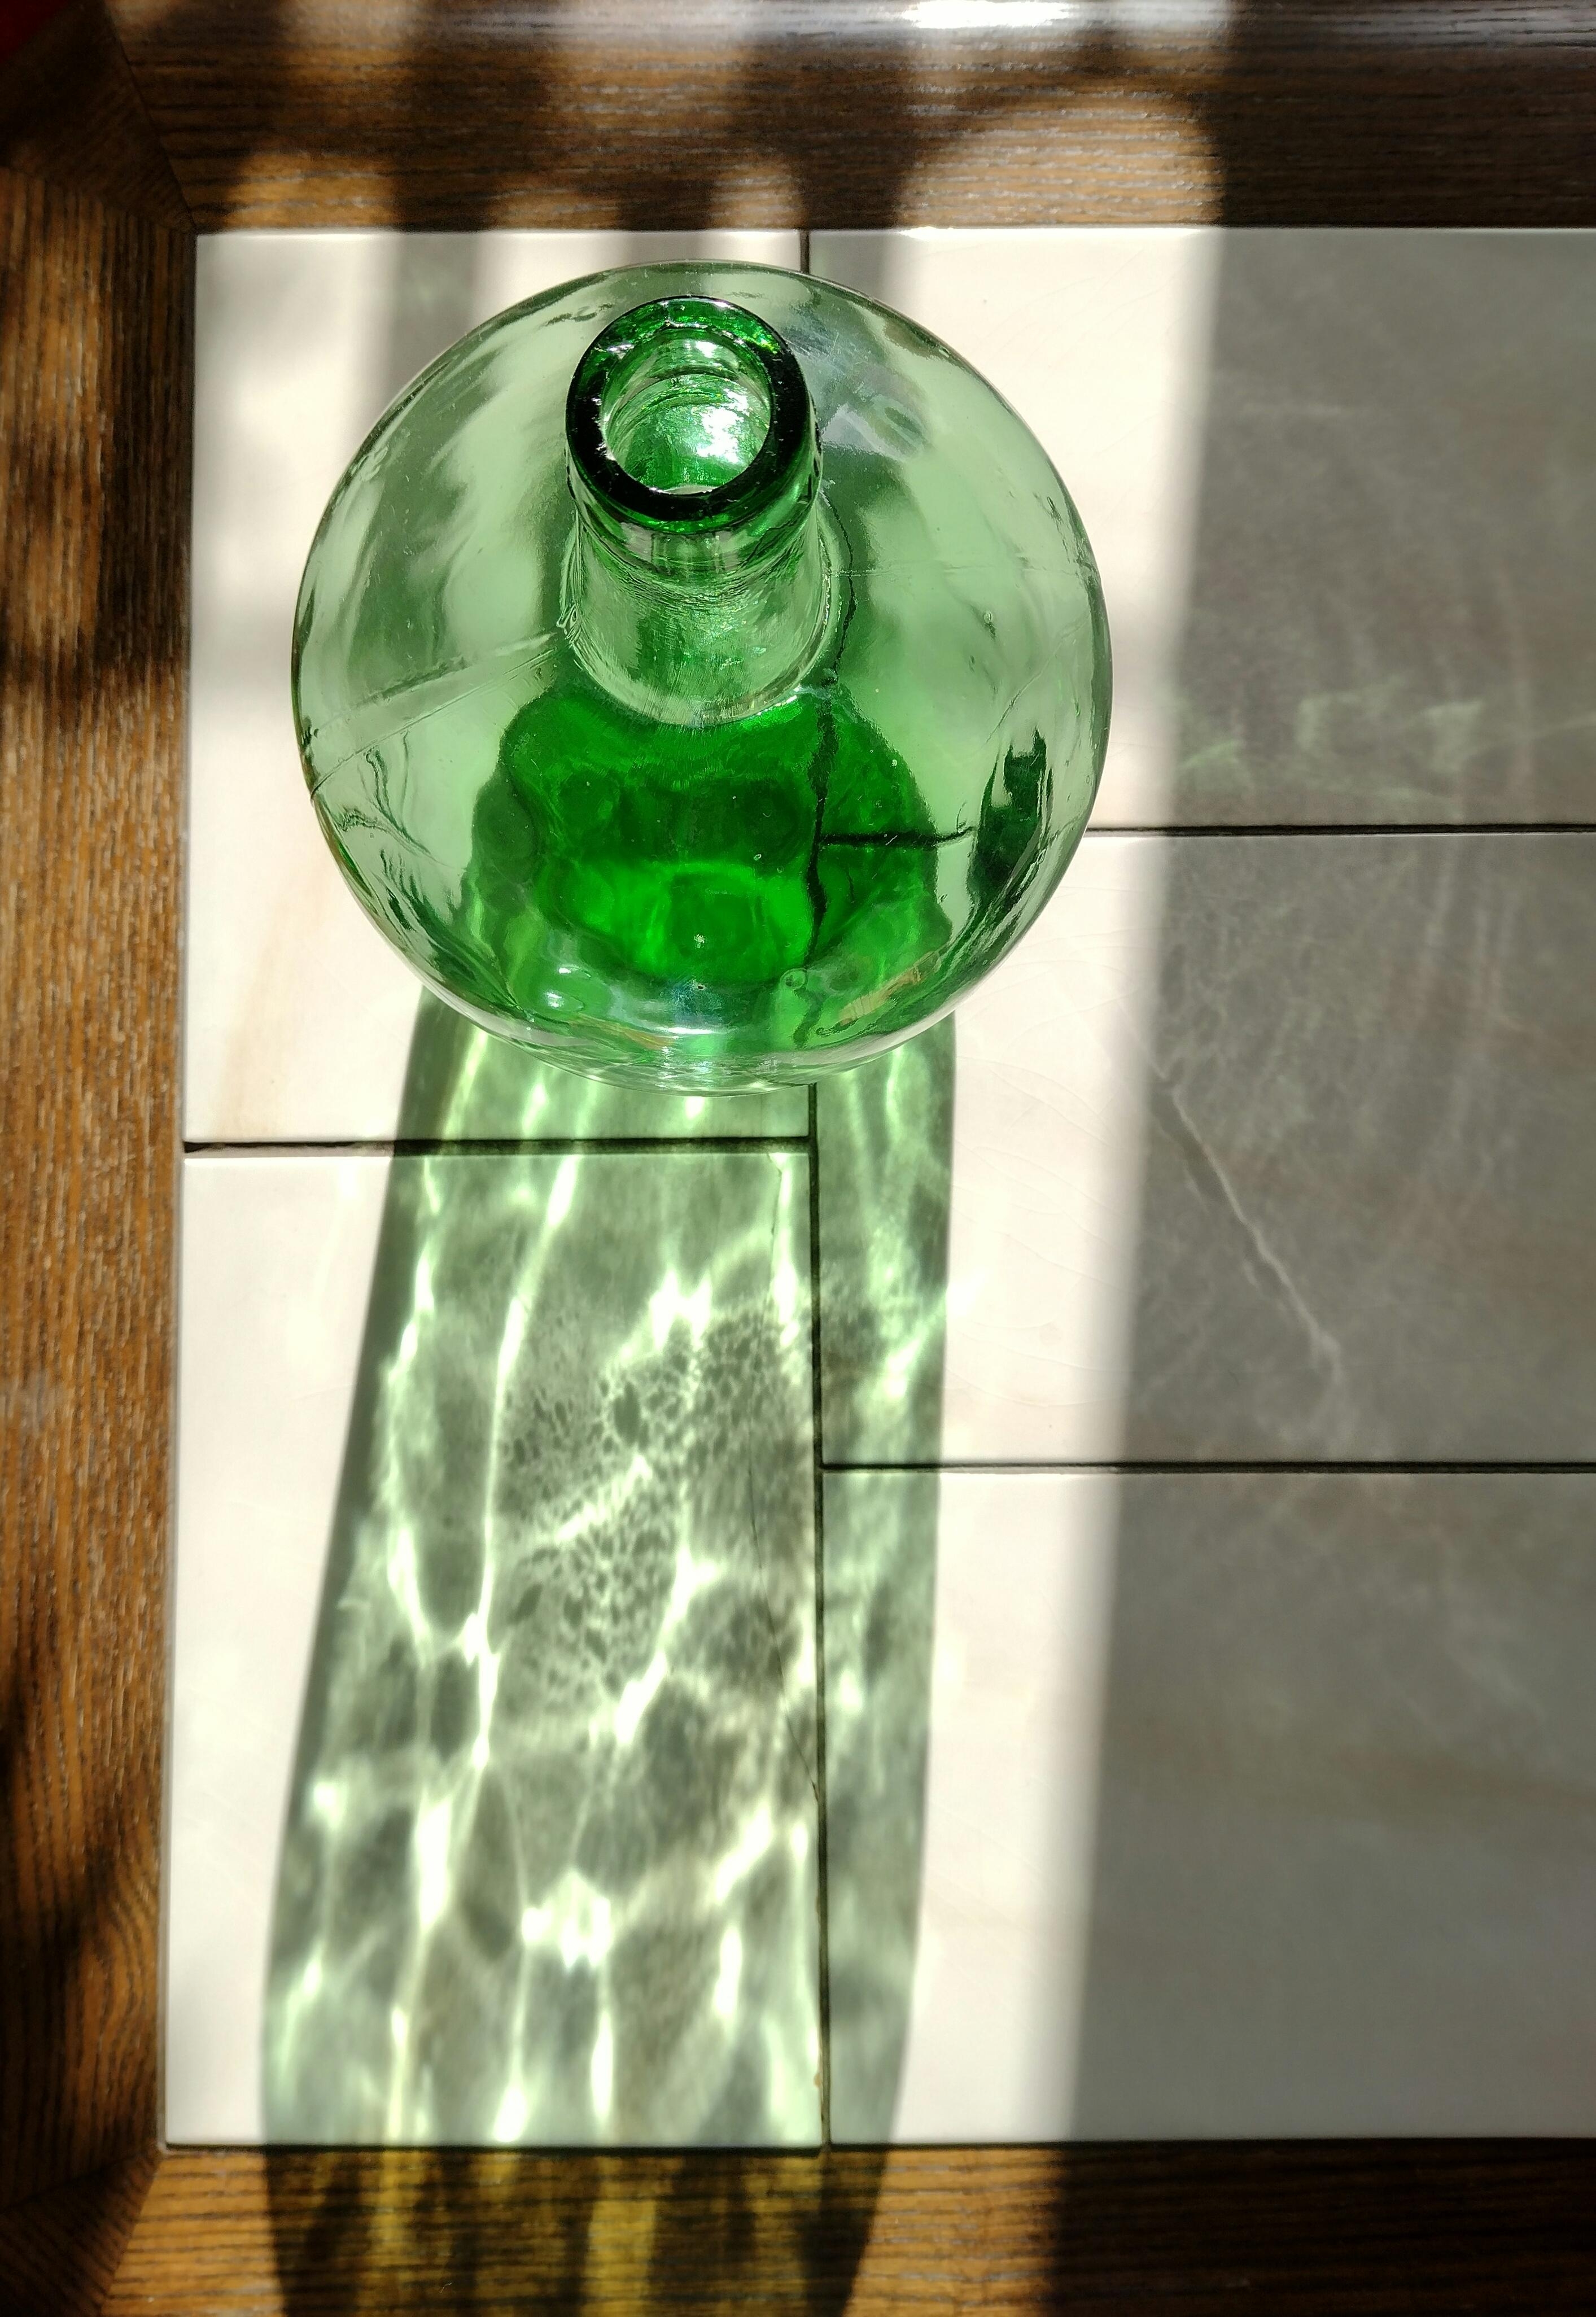 Endlich Sonnenschein 🌞
#grün #glas #flasche 